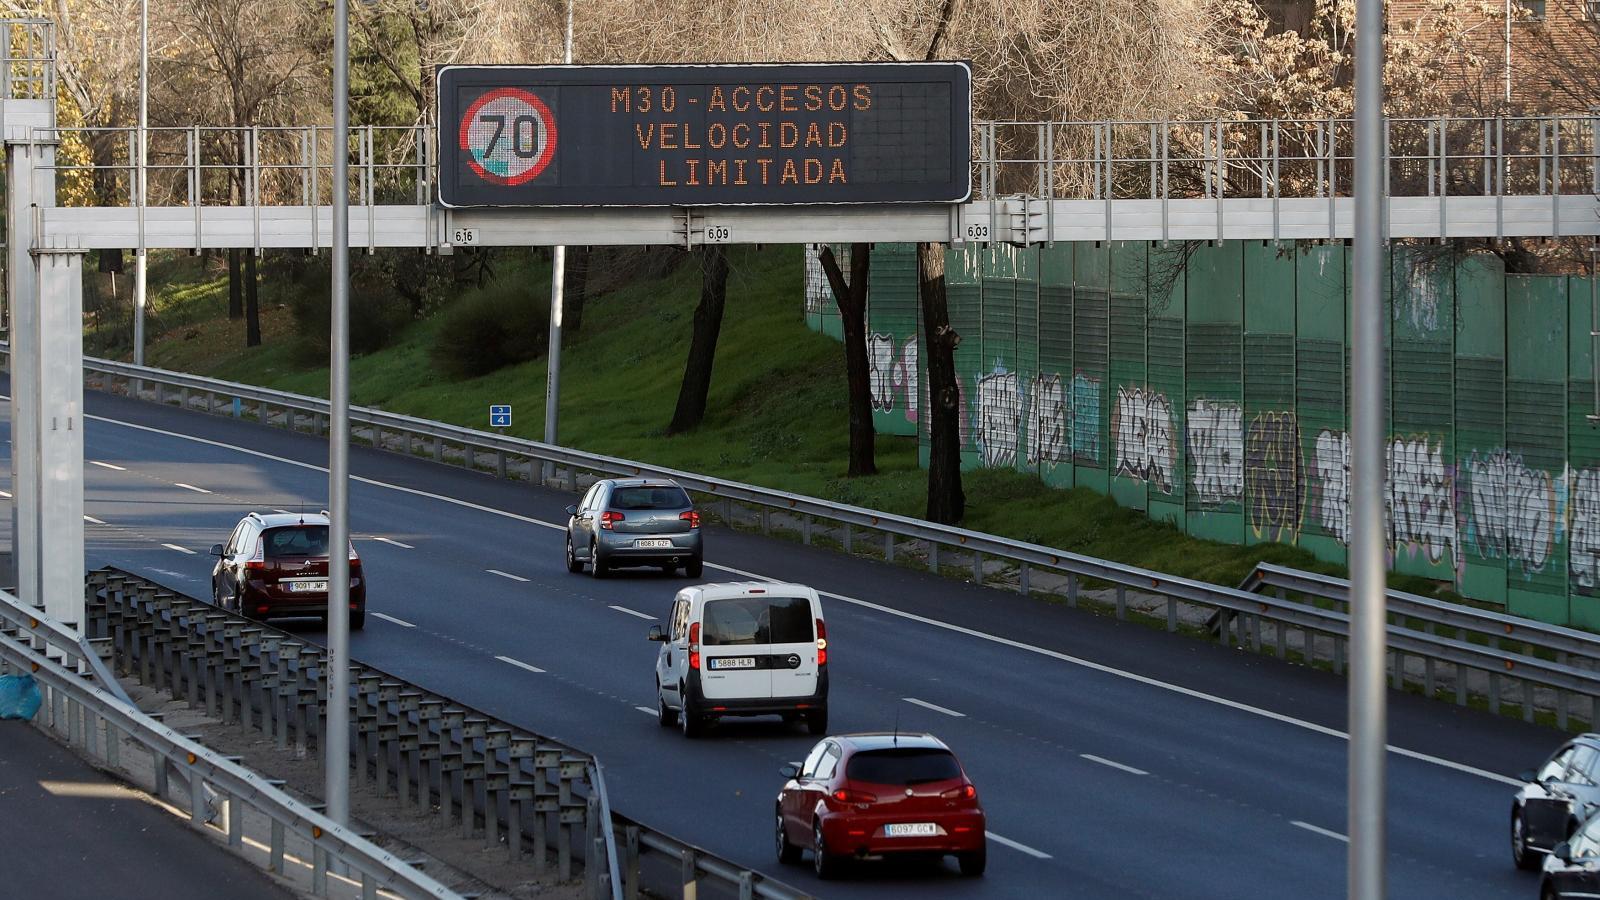 Madrid límita a 70 km/hora la velocidad en la M-30 y accesos por la polución